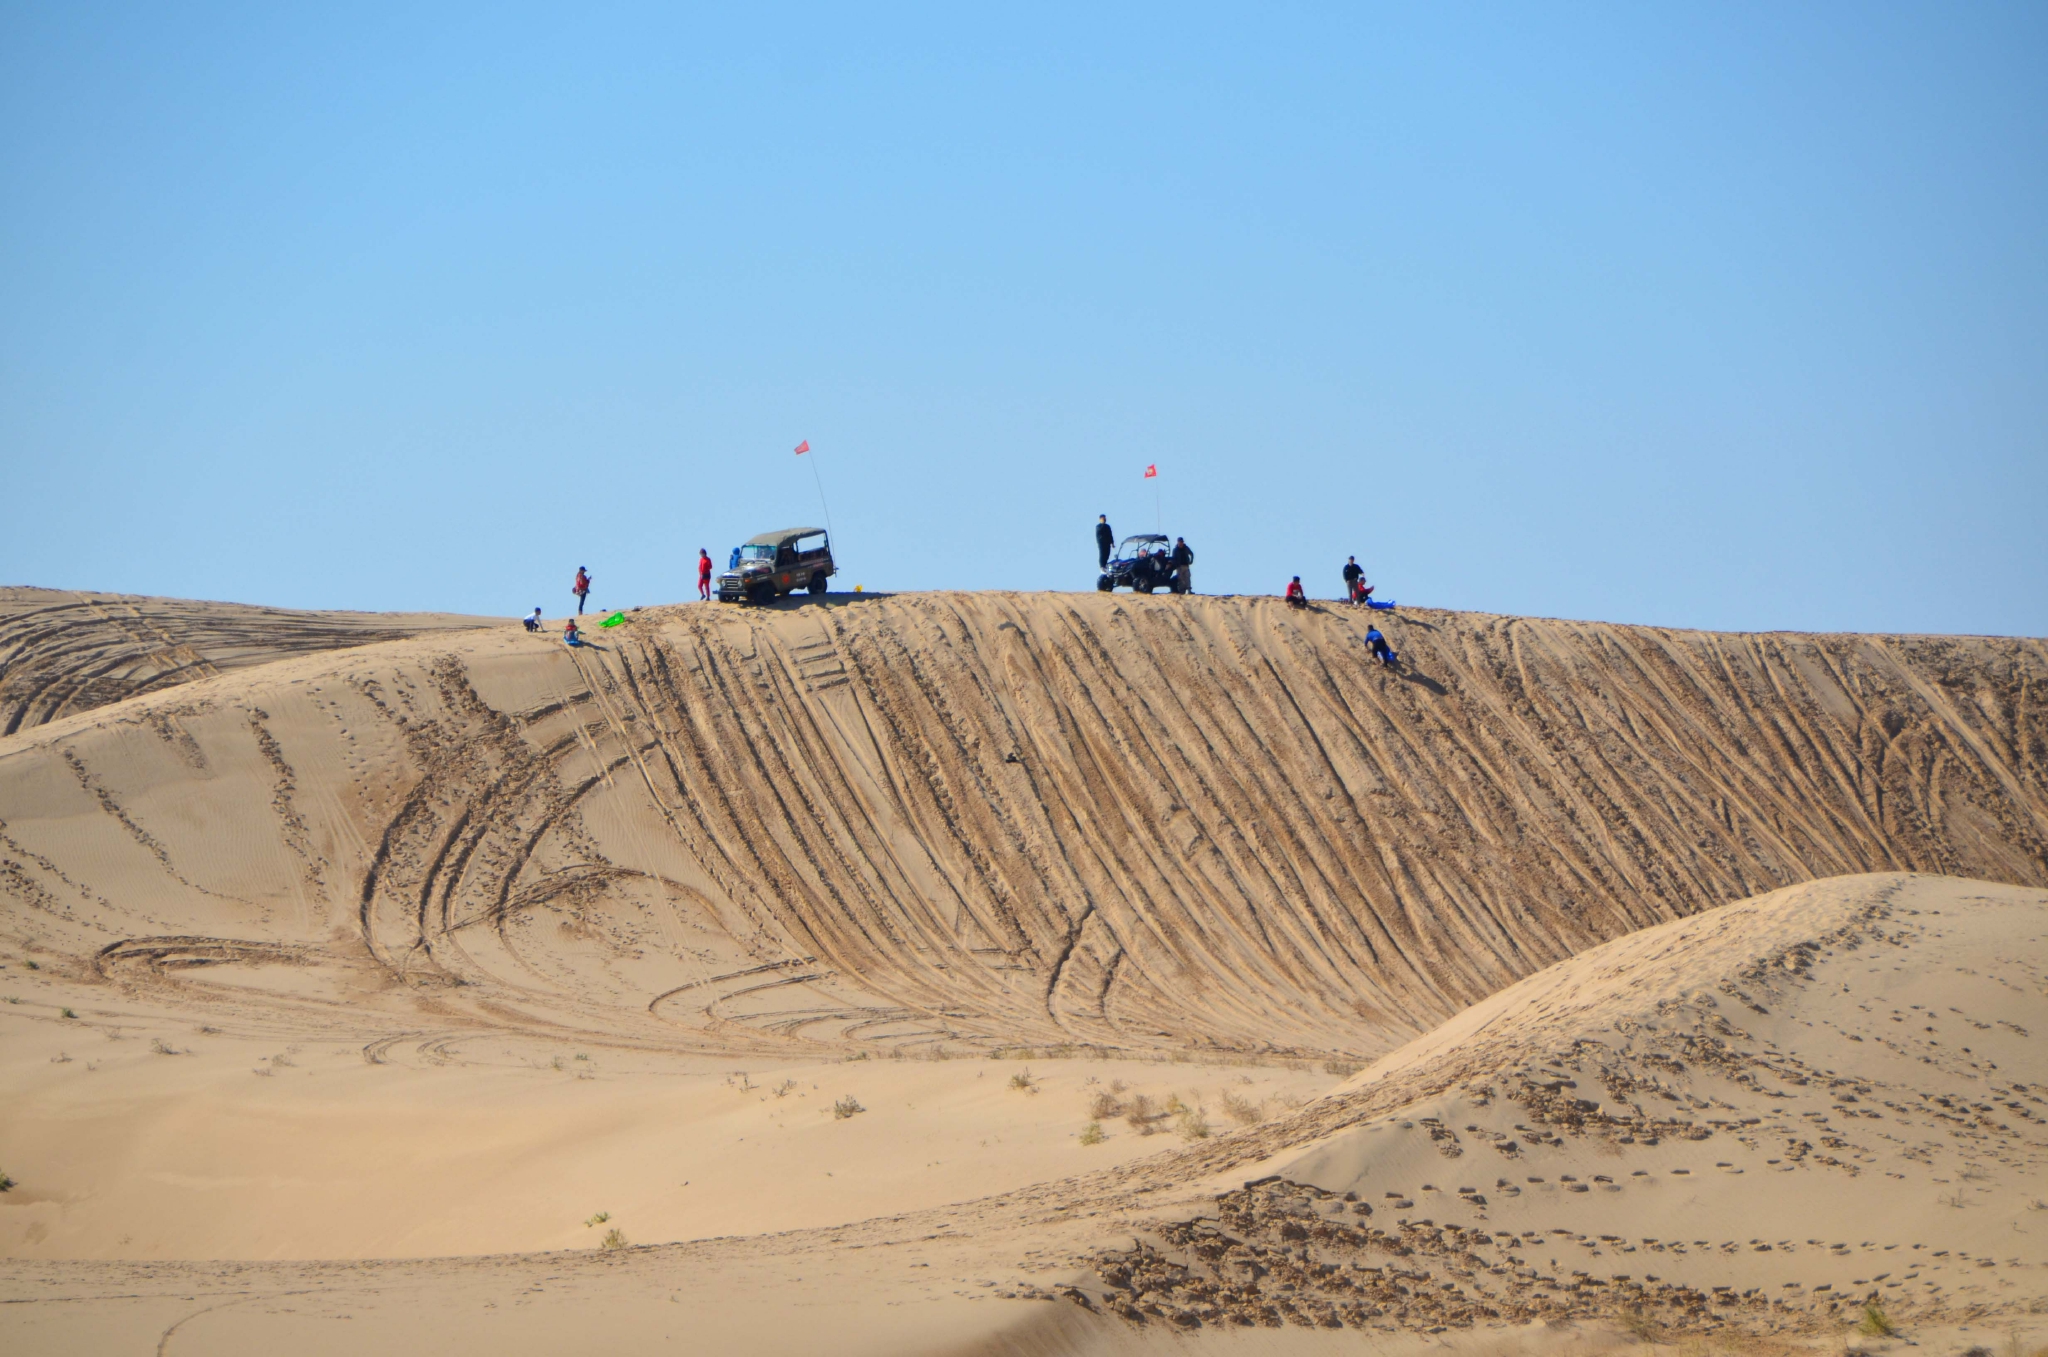 地处科尔沁沙地腹地的奈曼旗,坐拥离北京最近的沙漠——宝古图沙漠